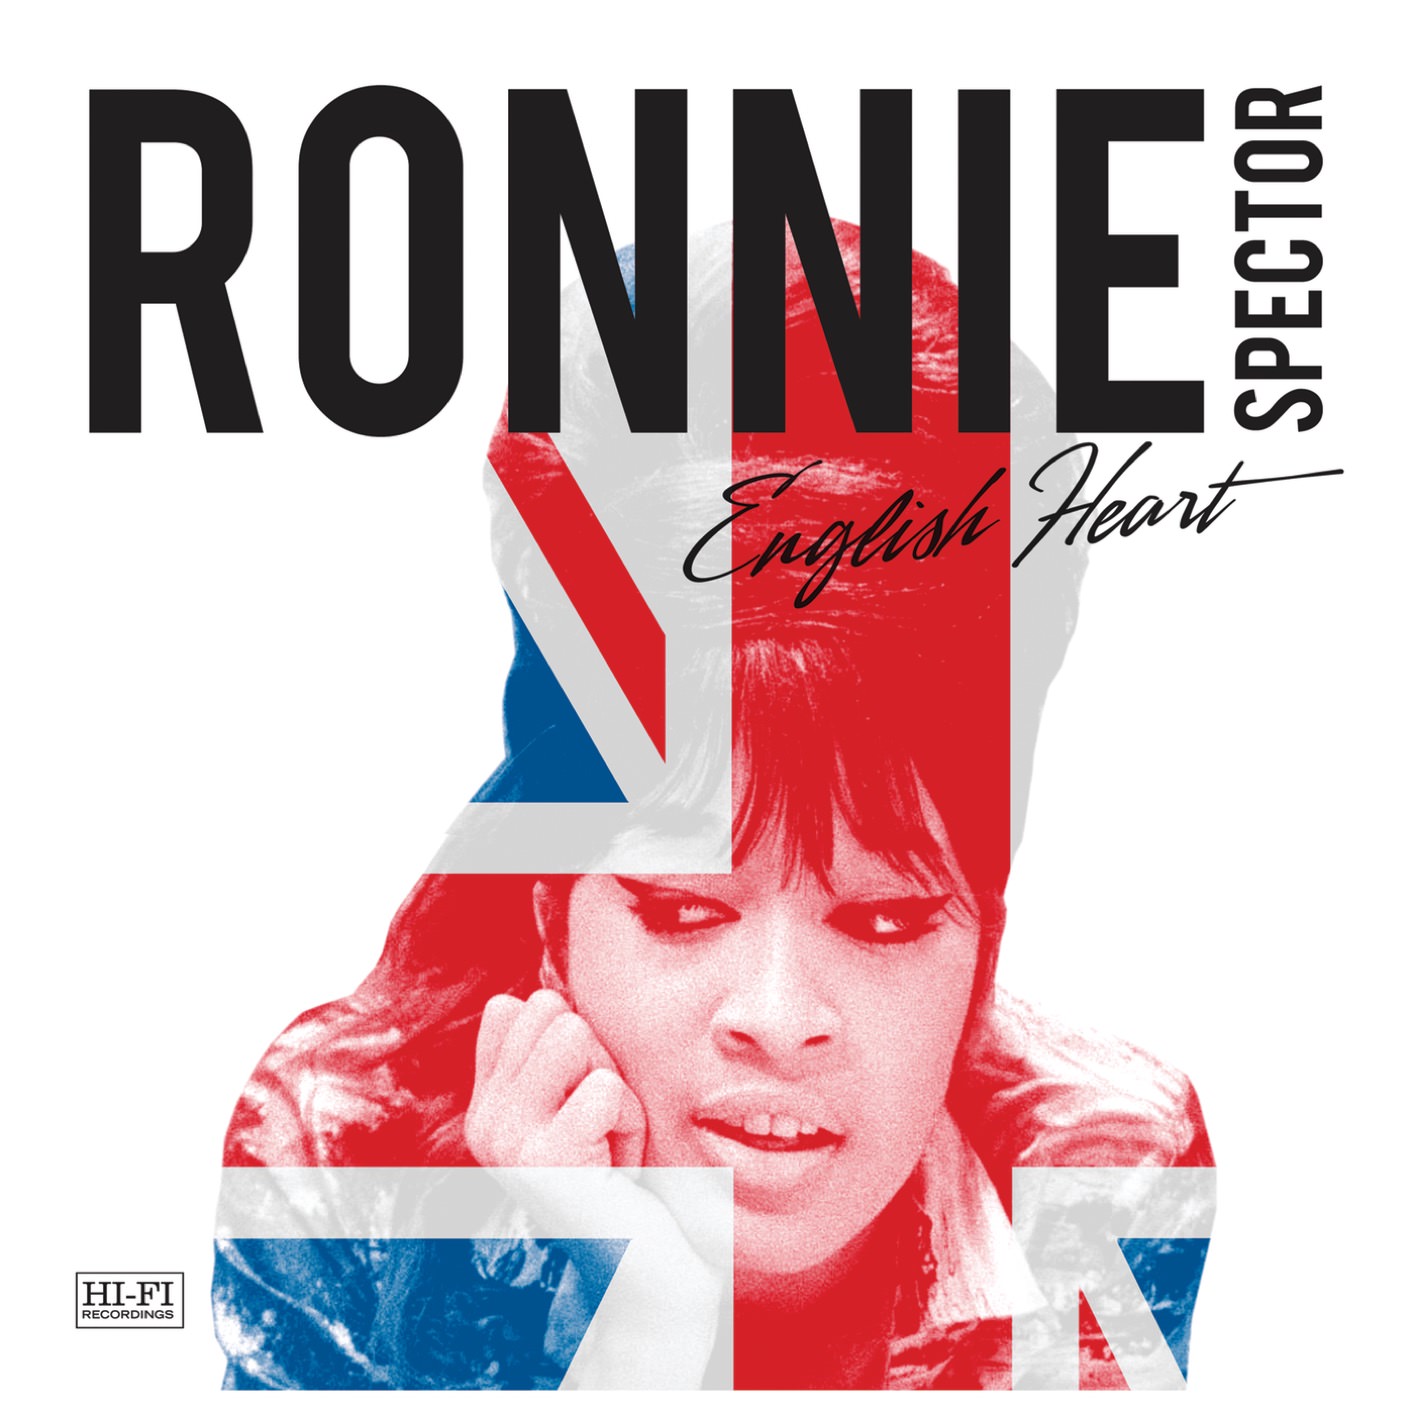 Ronnie Spector - English Heart (2016/2018) [FLAC 24bit/96kHz]